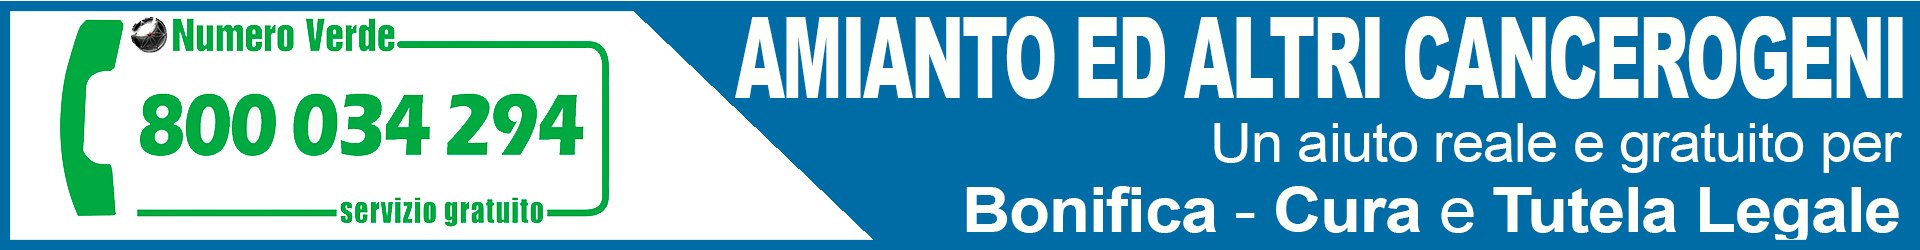 Osservatorio Nazionale Amianto Puglia